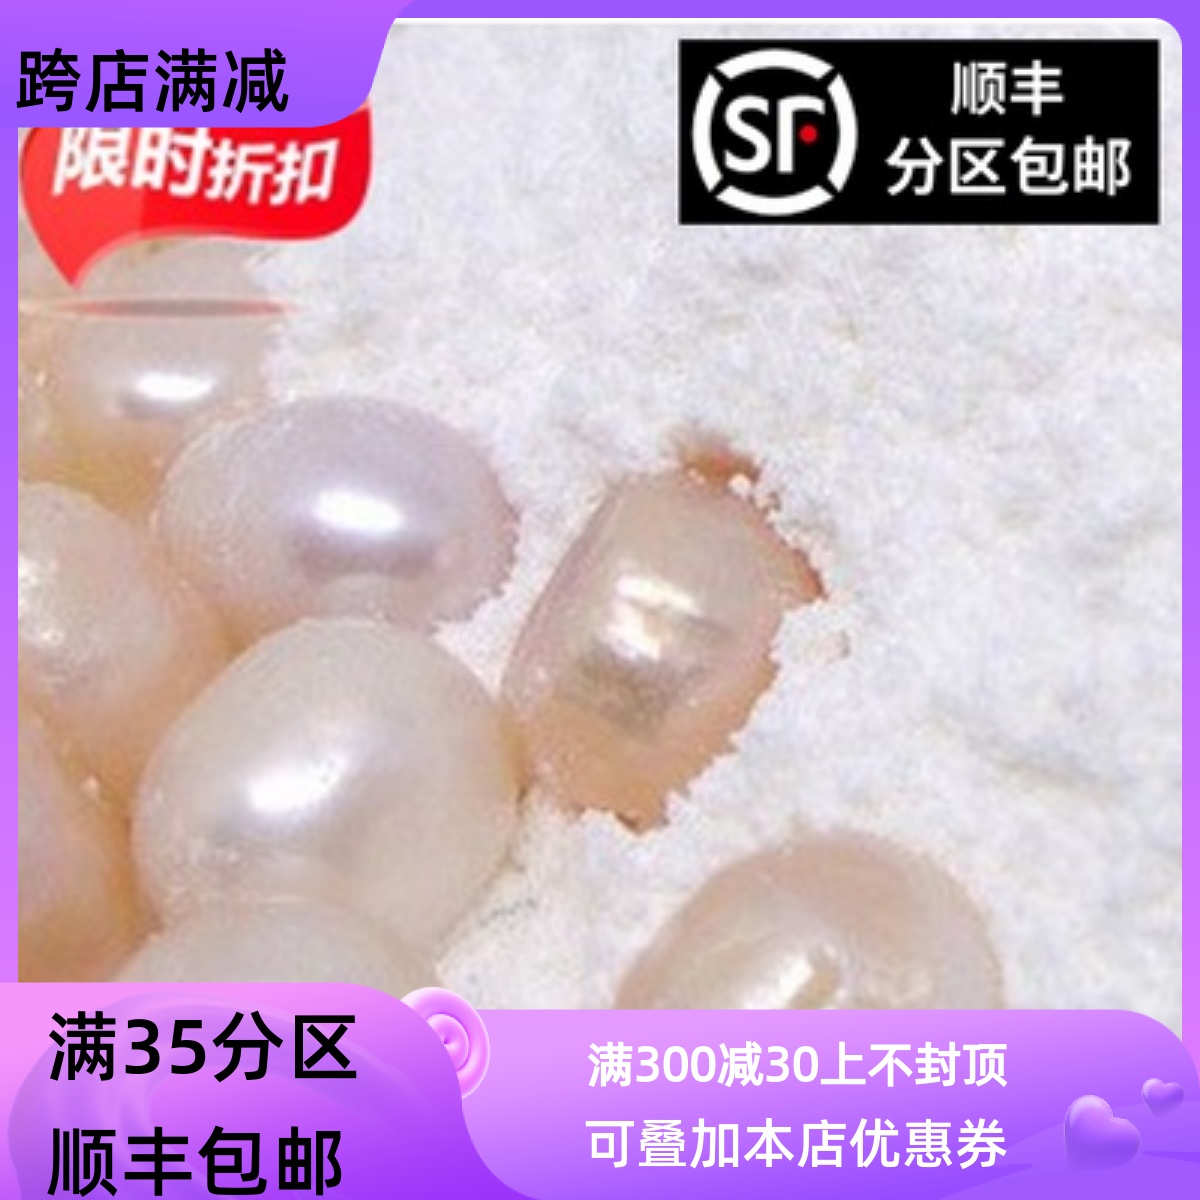 同仁堂质量 中药材 现磨 珍珠粉 超细粉 50g 面膜粉包邮